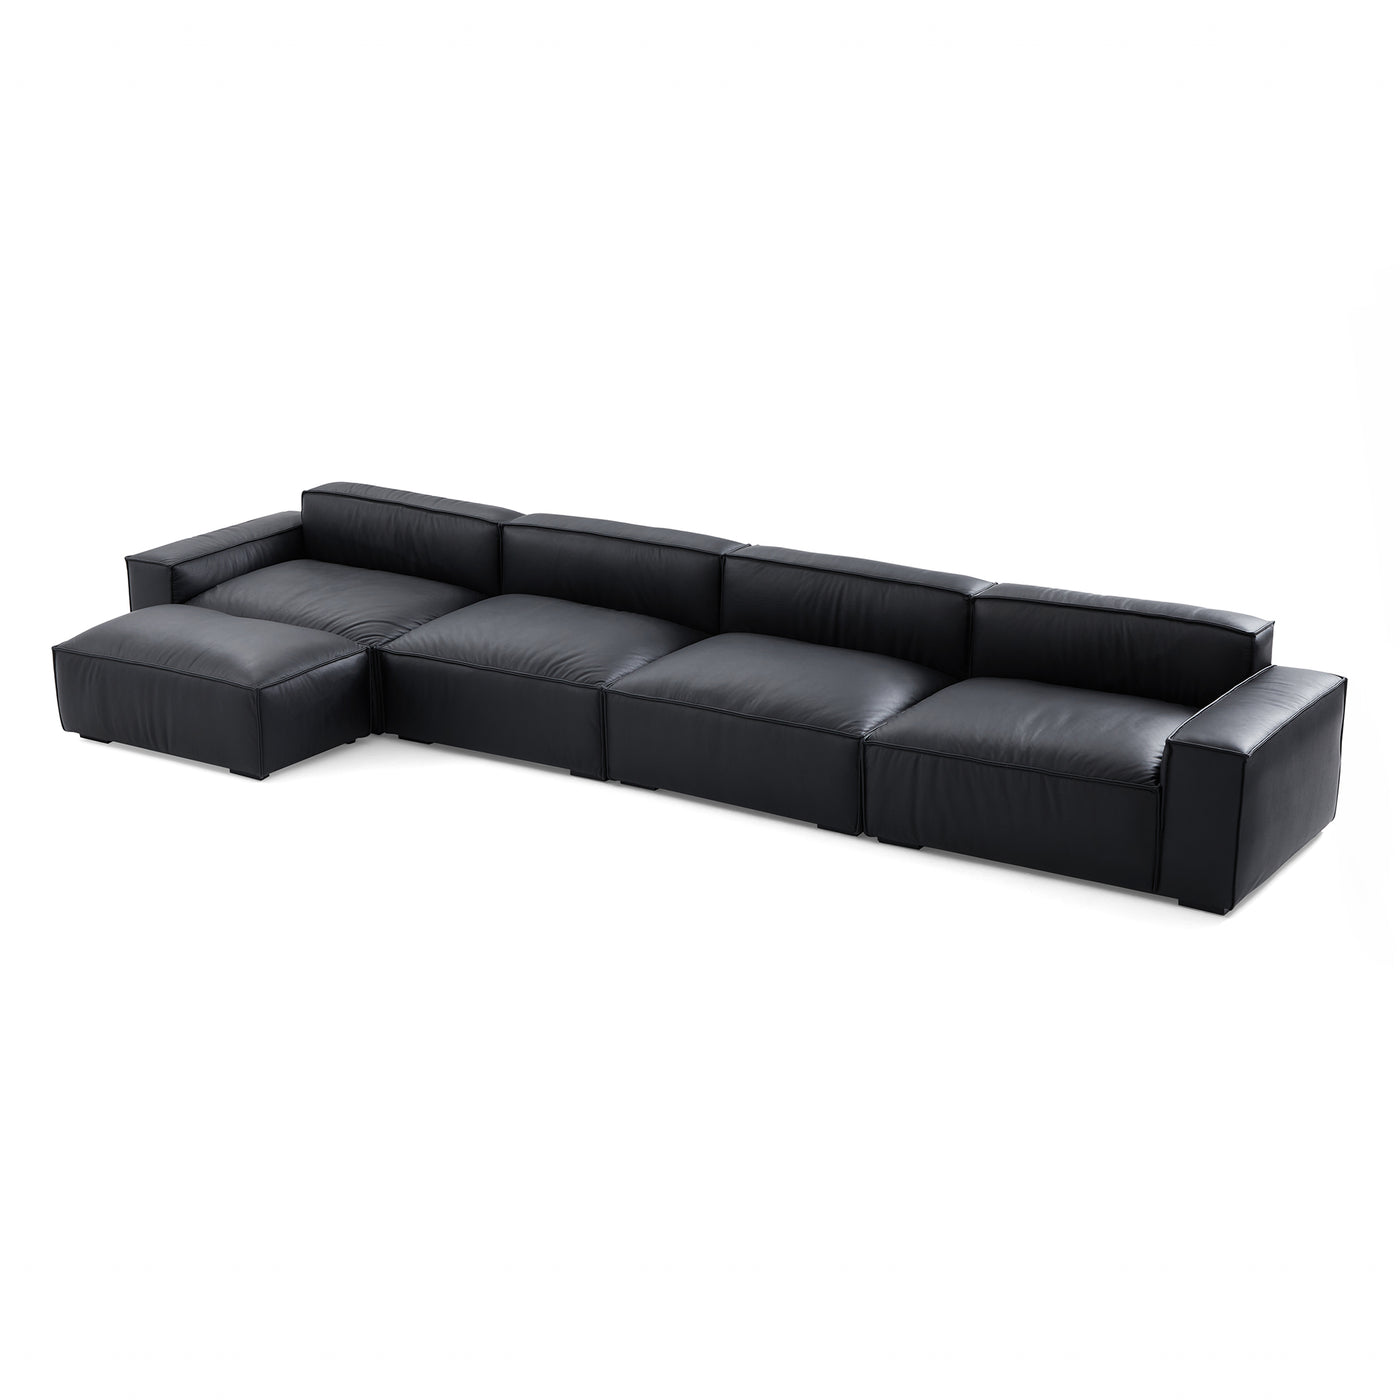 Luxury Minimalist Leather Black Sofa and Ottoman-Black-179.5"